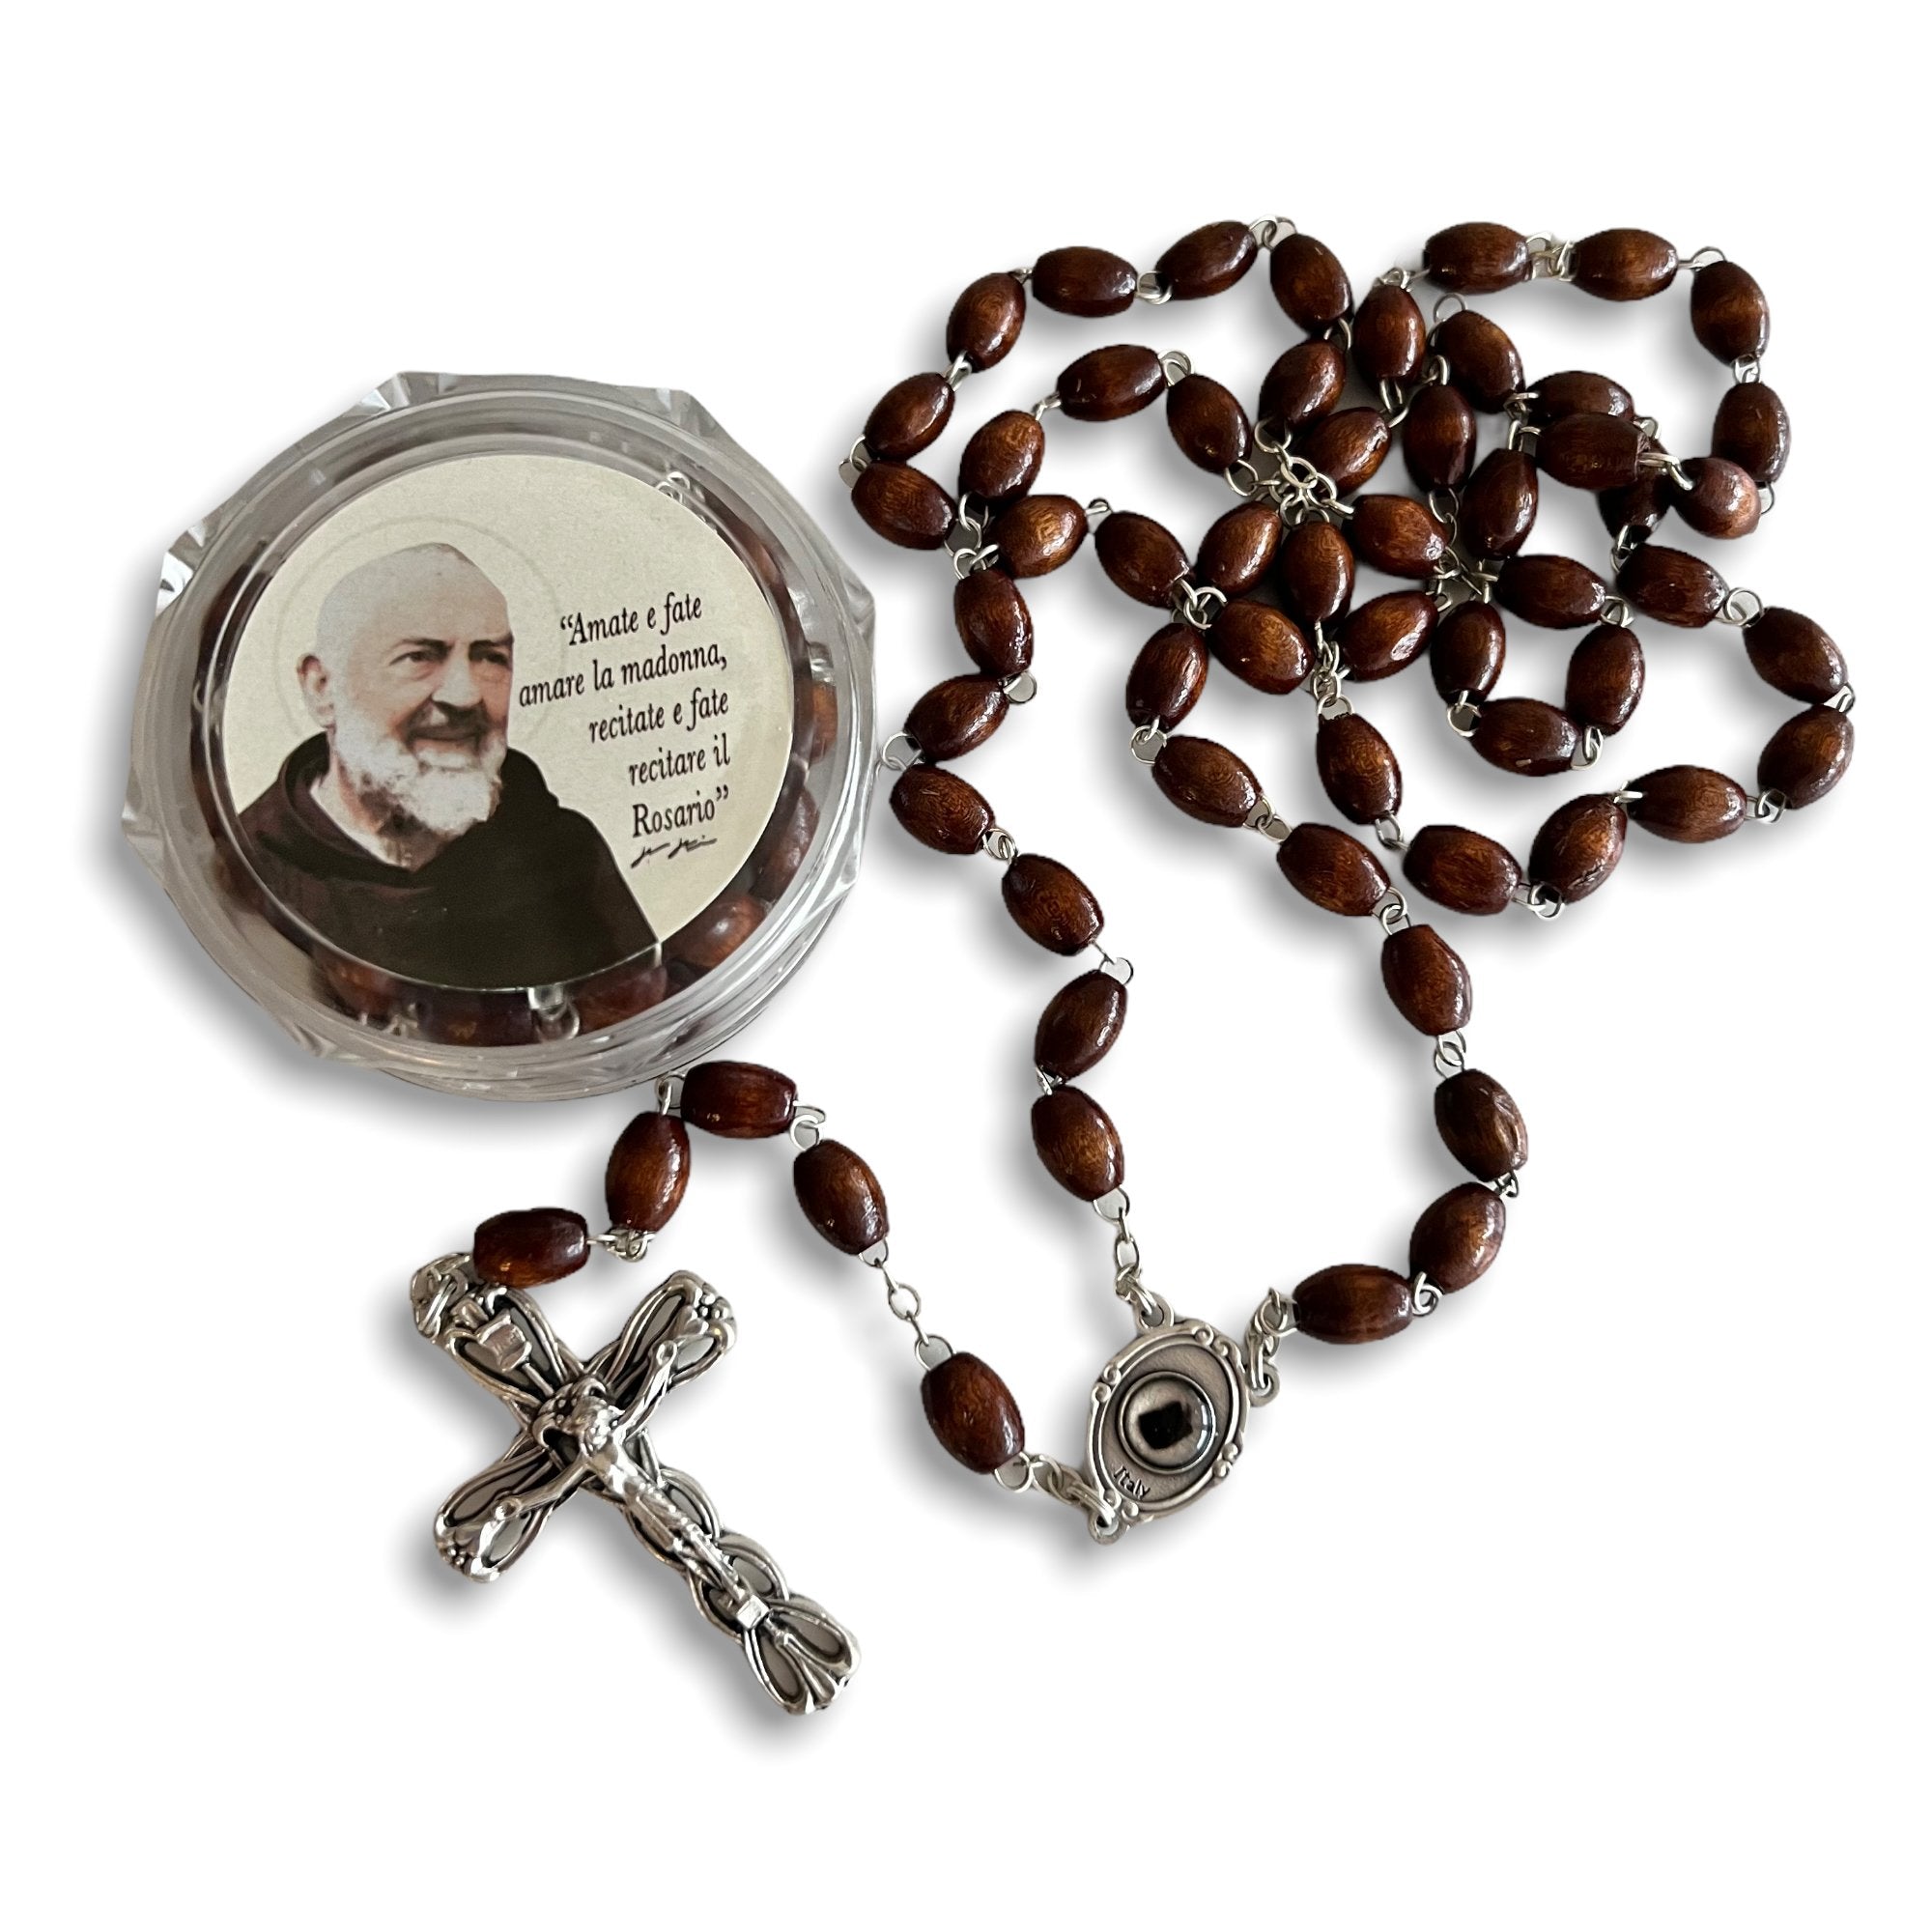 Rosarios de reliquia de San Padre Pio | católicamente – Catholically